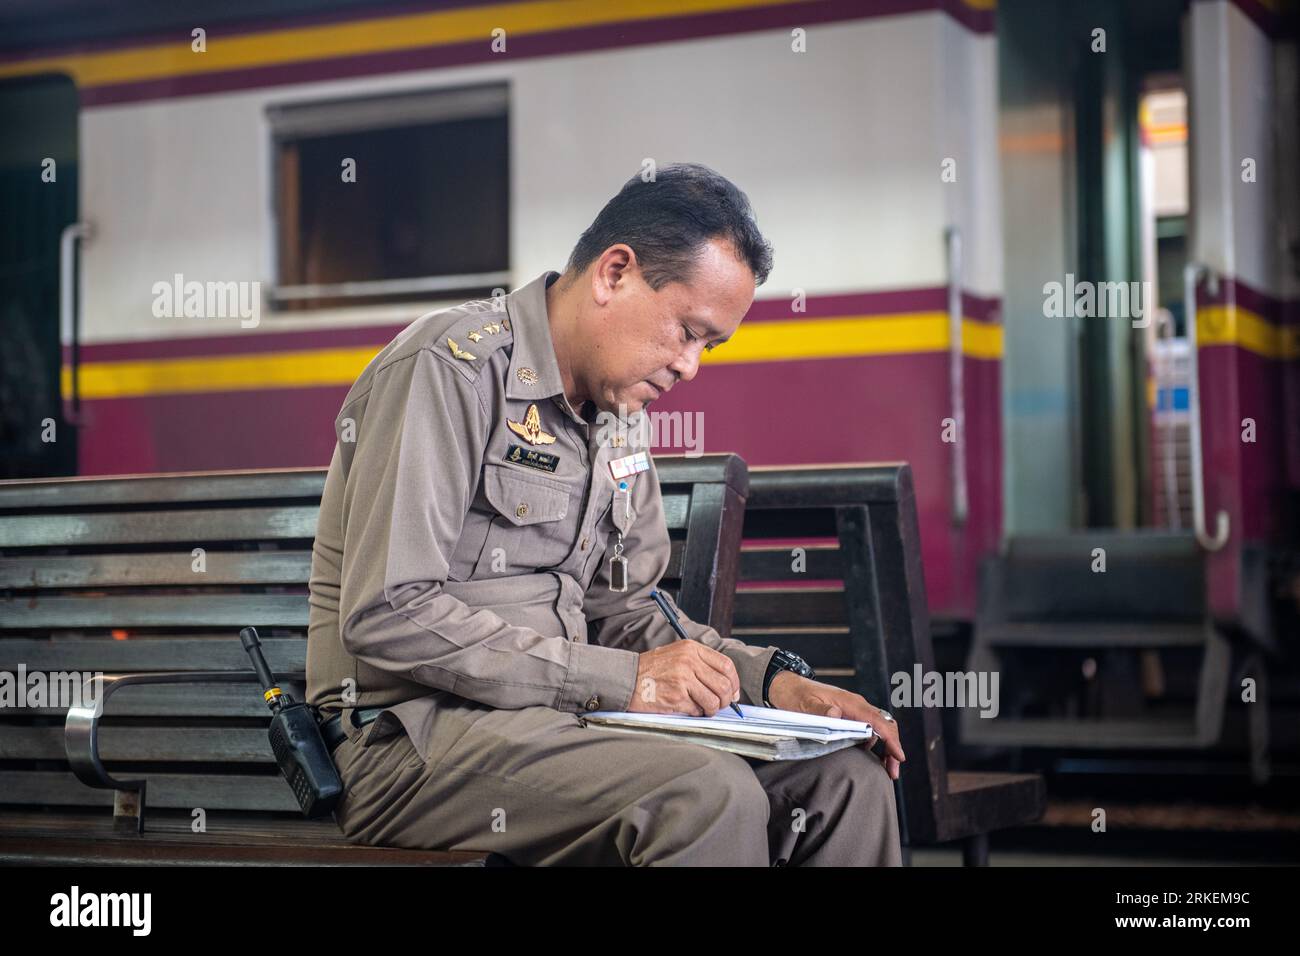 Bangkok, Tailandia - 6 de marzo 2020: Oficial de policía con un uniforme marrón sentado en un banco en la plataforma de la estación de tren de Bangkok, escribiendo diligentemente una nota Foto de stock